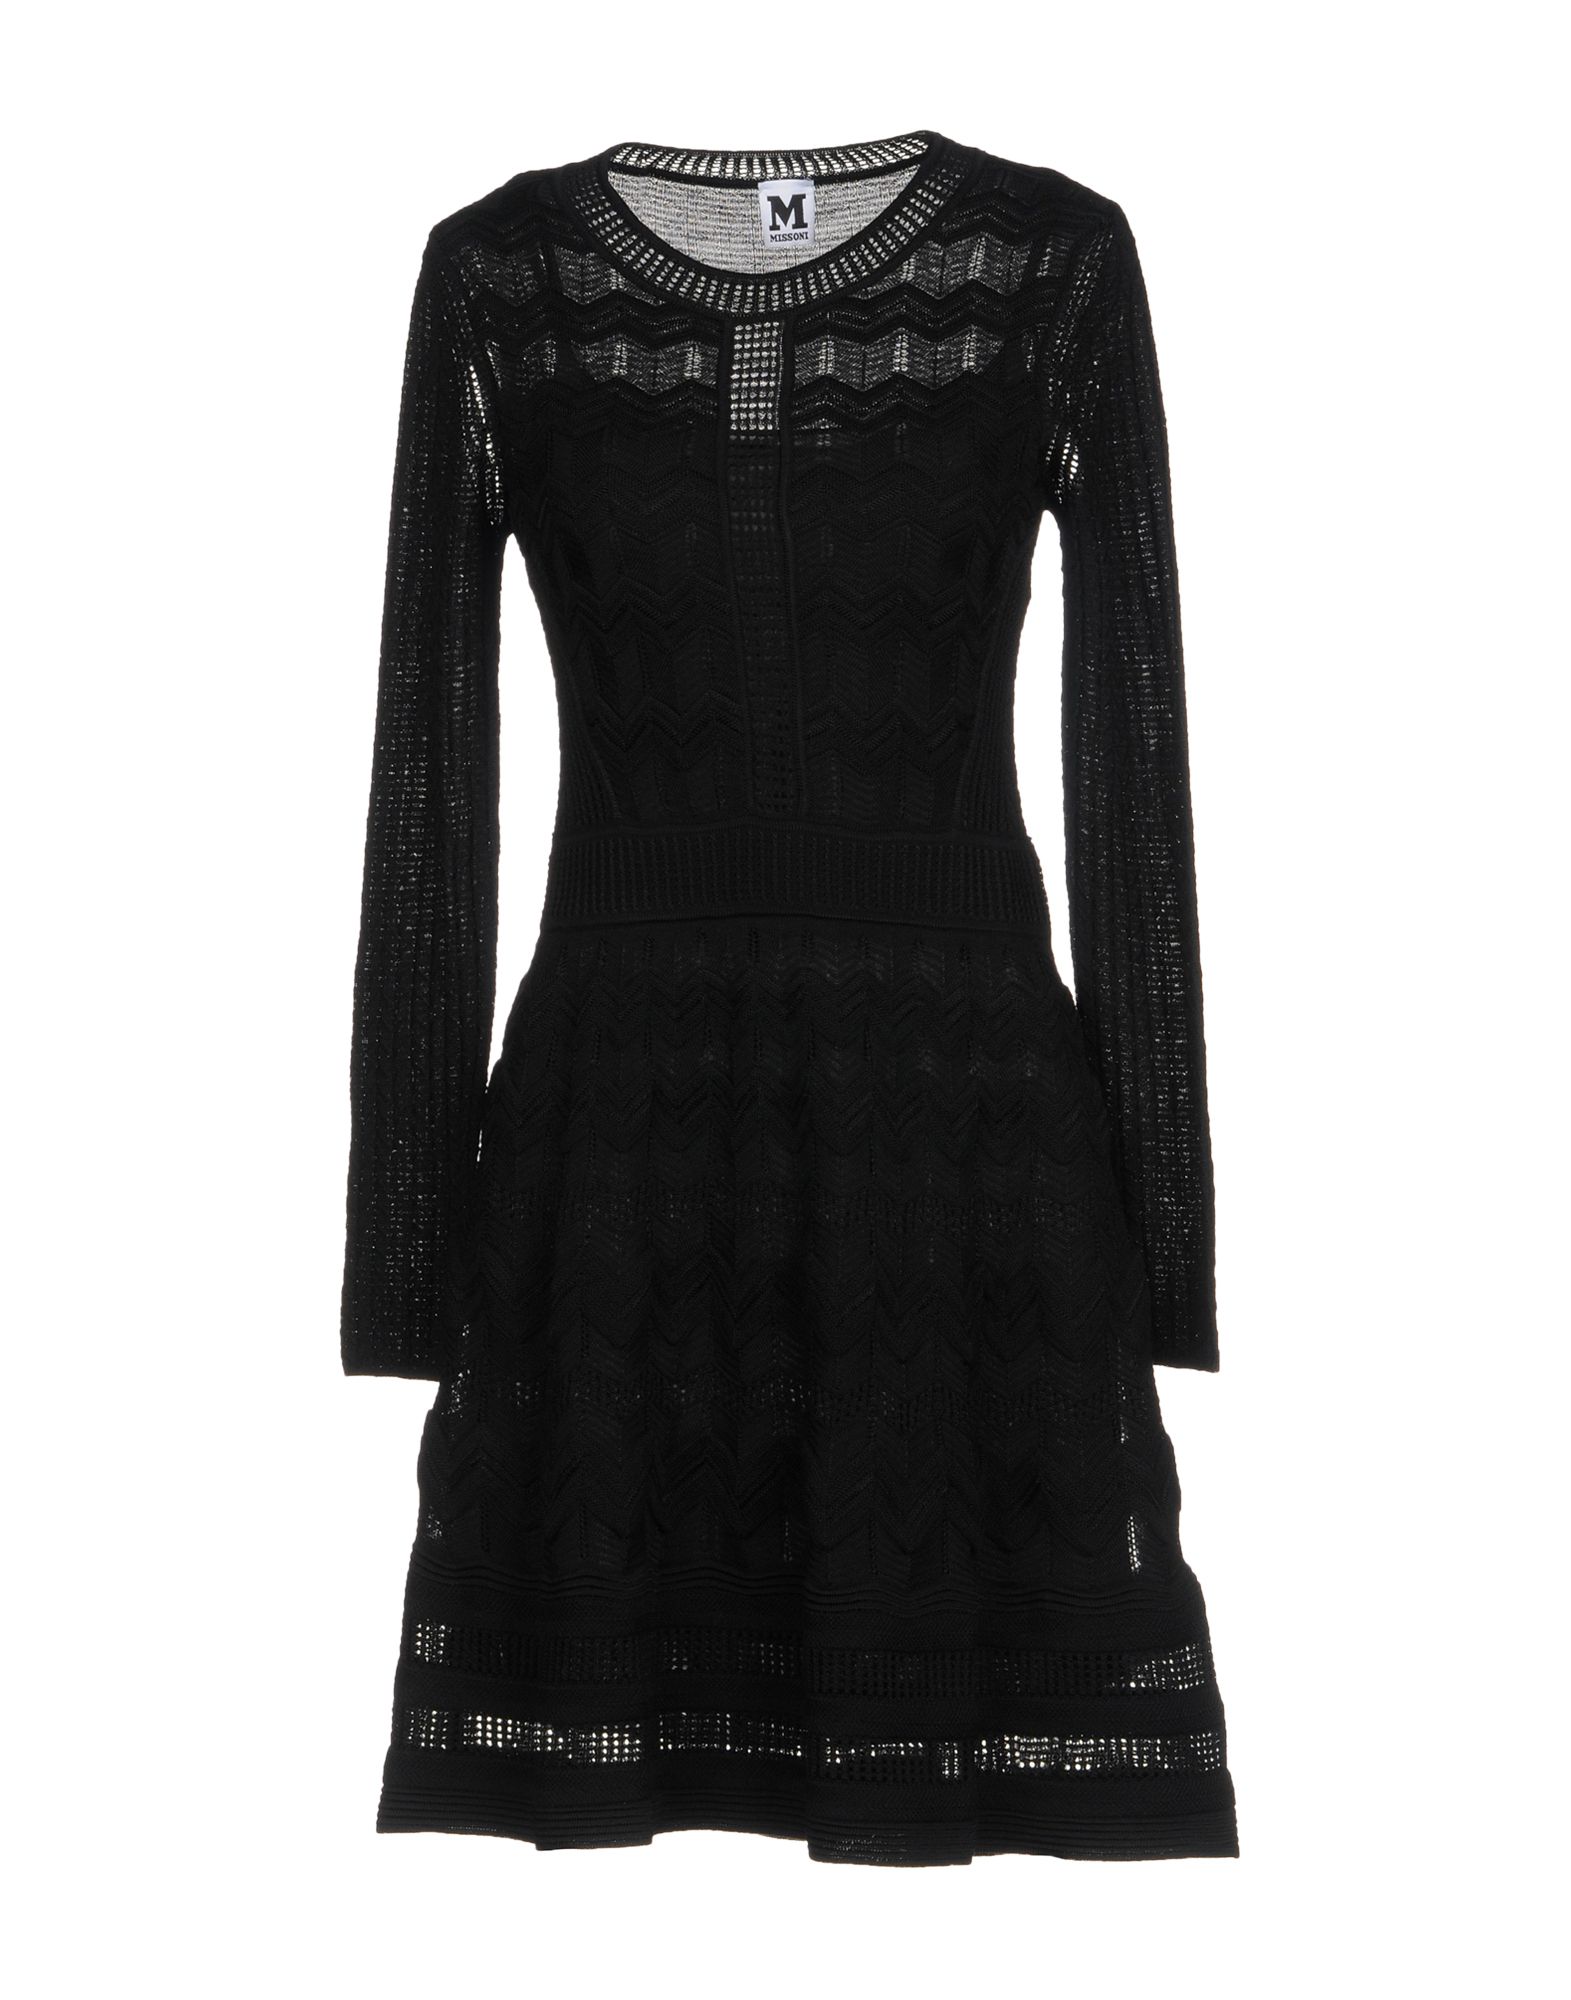 M MISSONI Knit dress,34843637DU 3